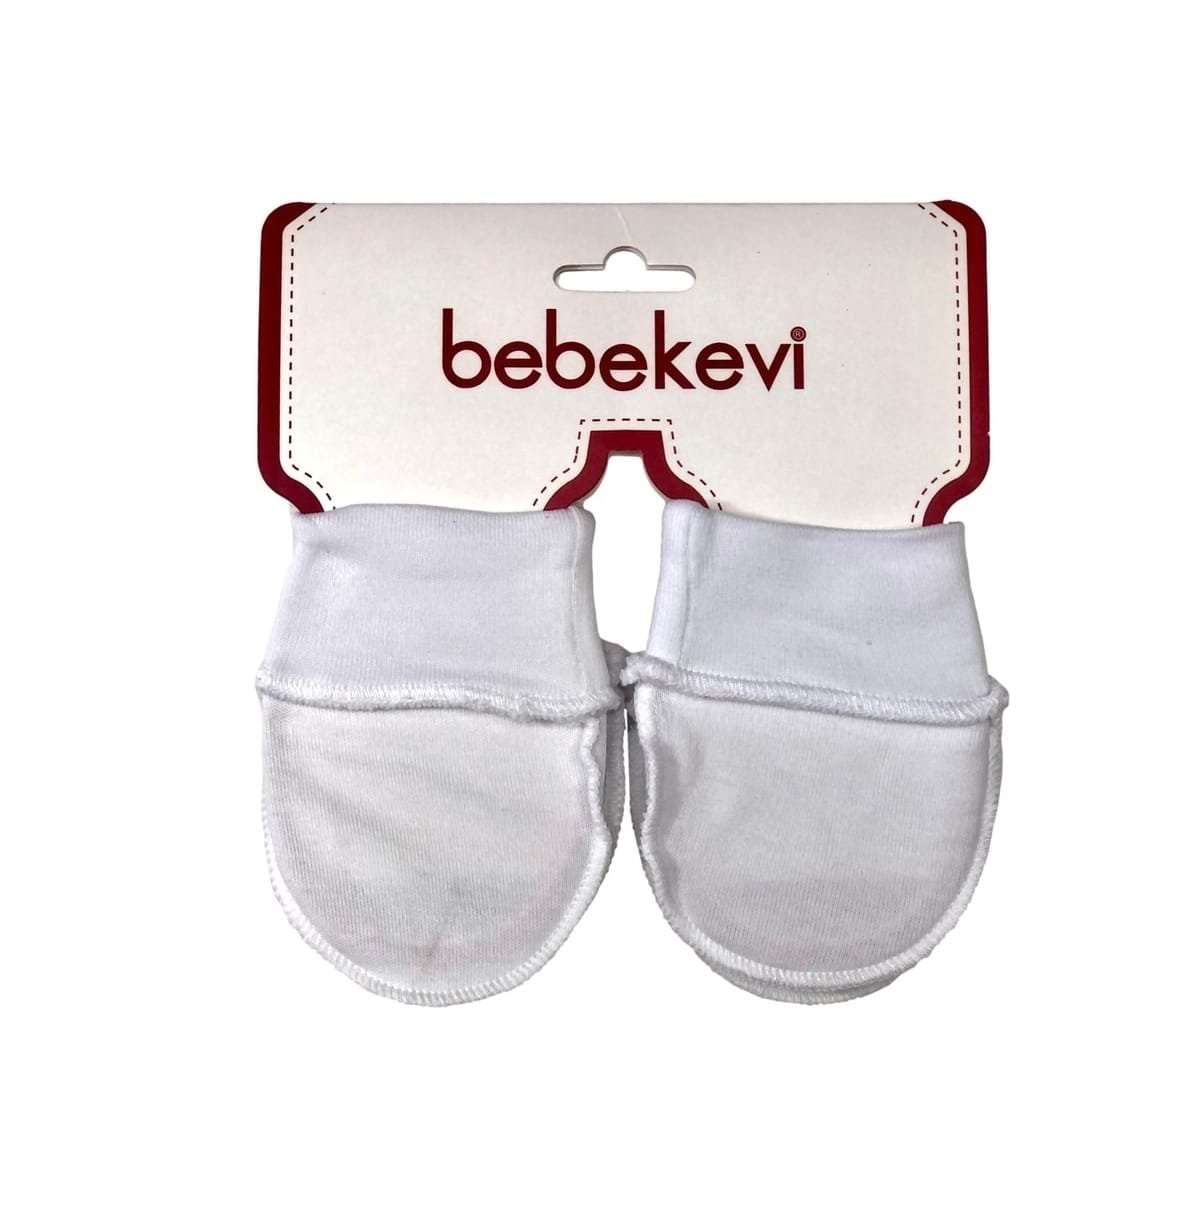 Moufles bébé en coton - Bebekevi 